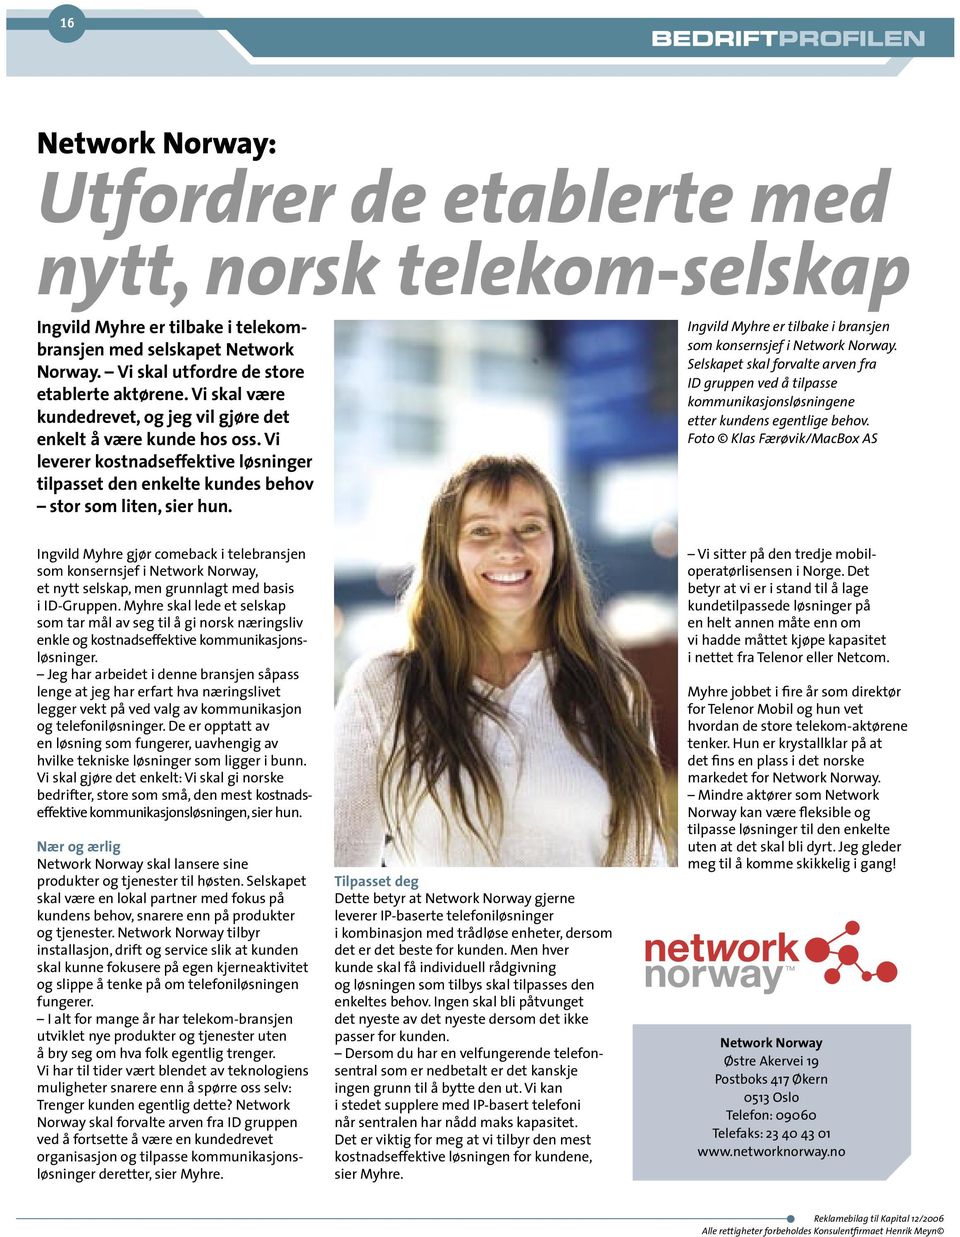 Ingvild Myhre er tilbake i bransjen som konsernsjef i Network Norway. Selskapet skal forvalte arven fra ID gruppen ved å tilpasse kommunikasjonsløsningene etter kundens egentlige behov.